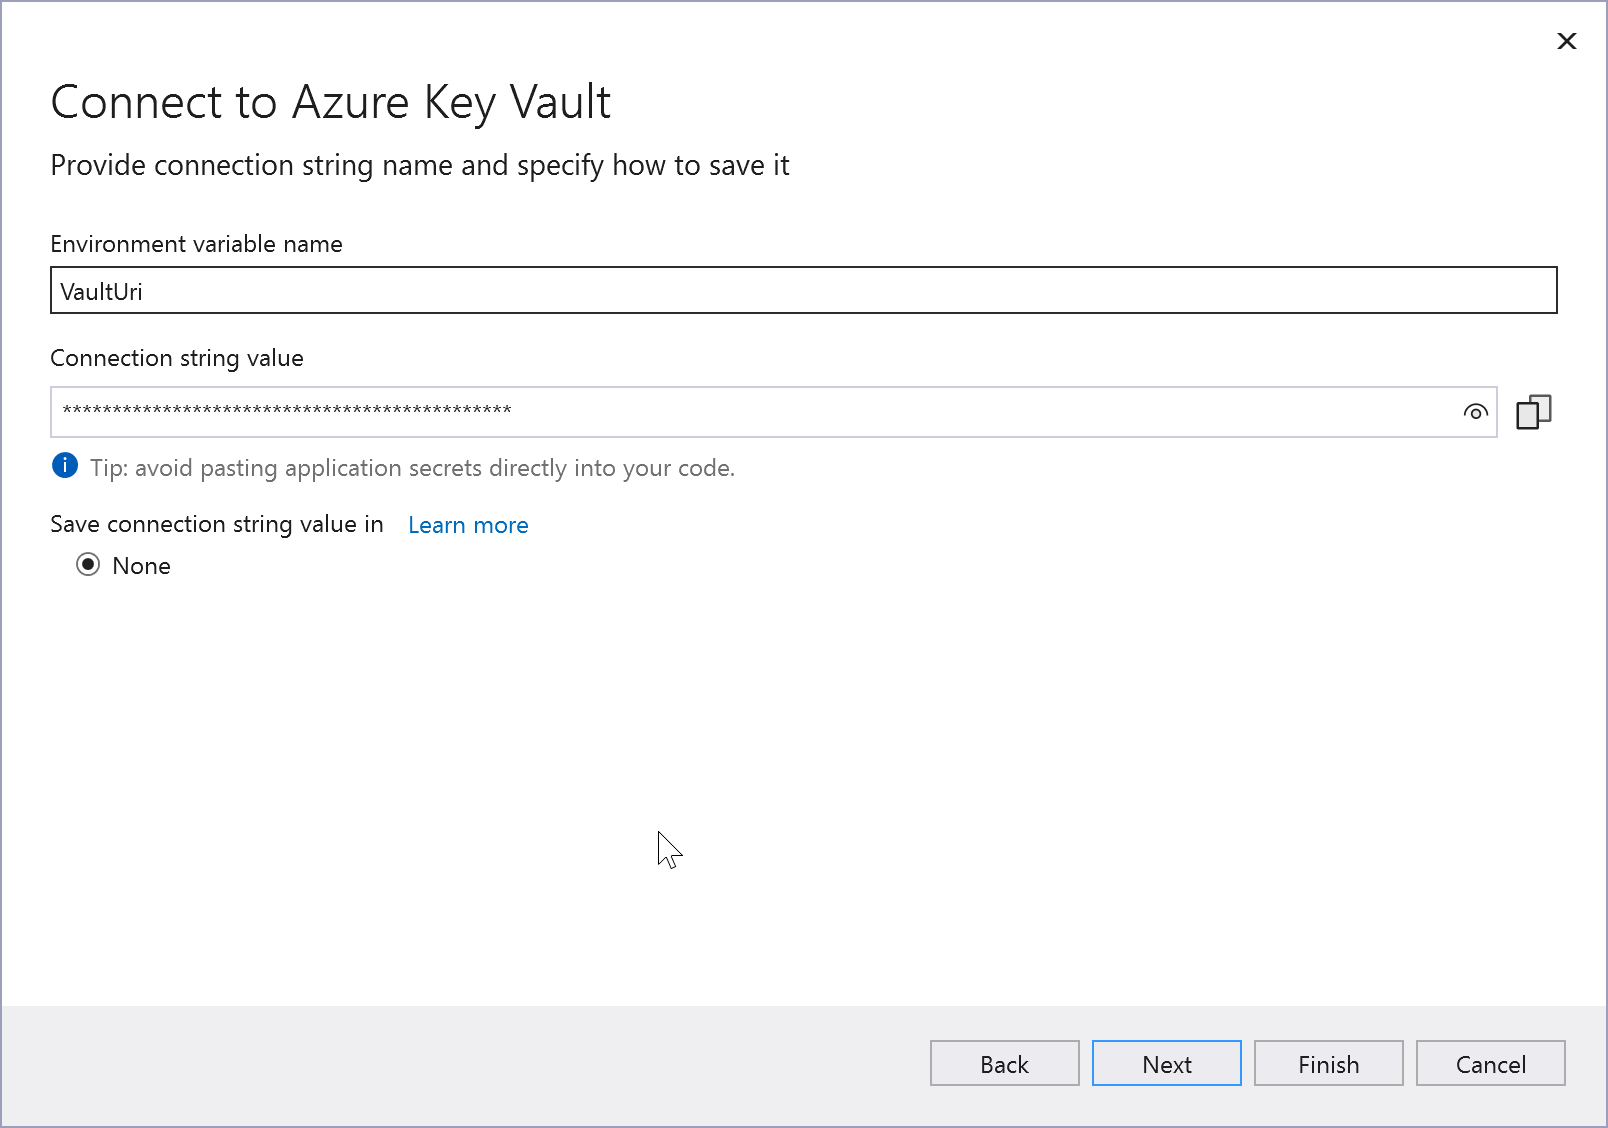 Capture de l’écran Se connecter à Azure Key Vault.